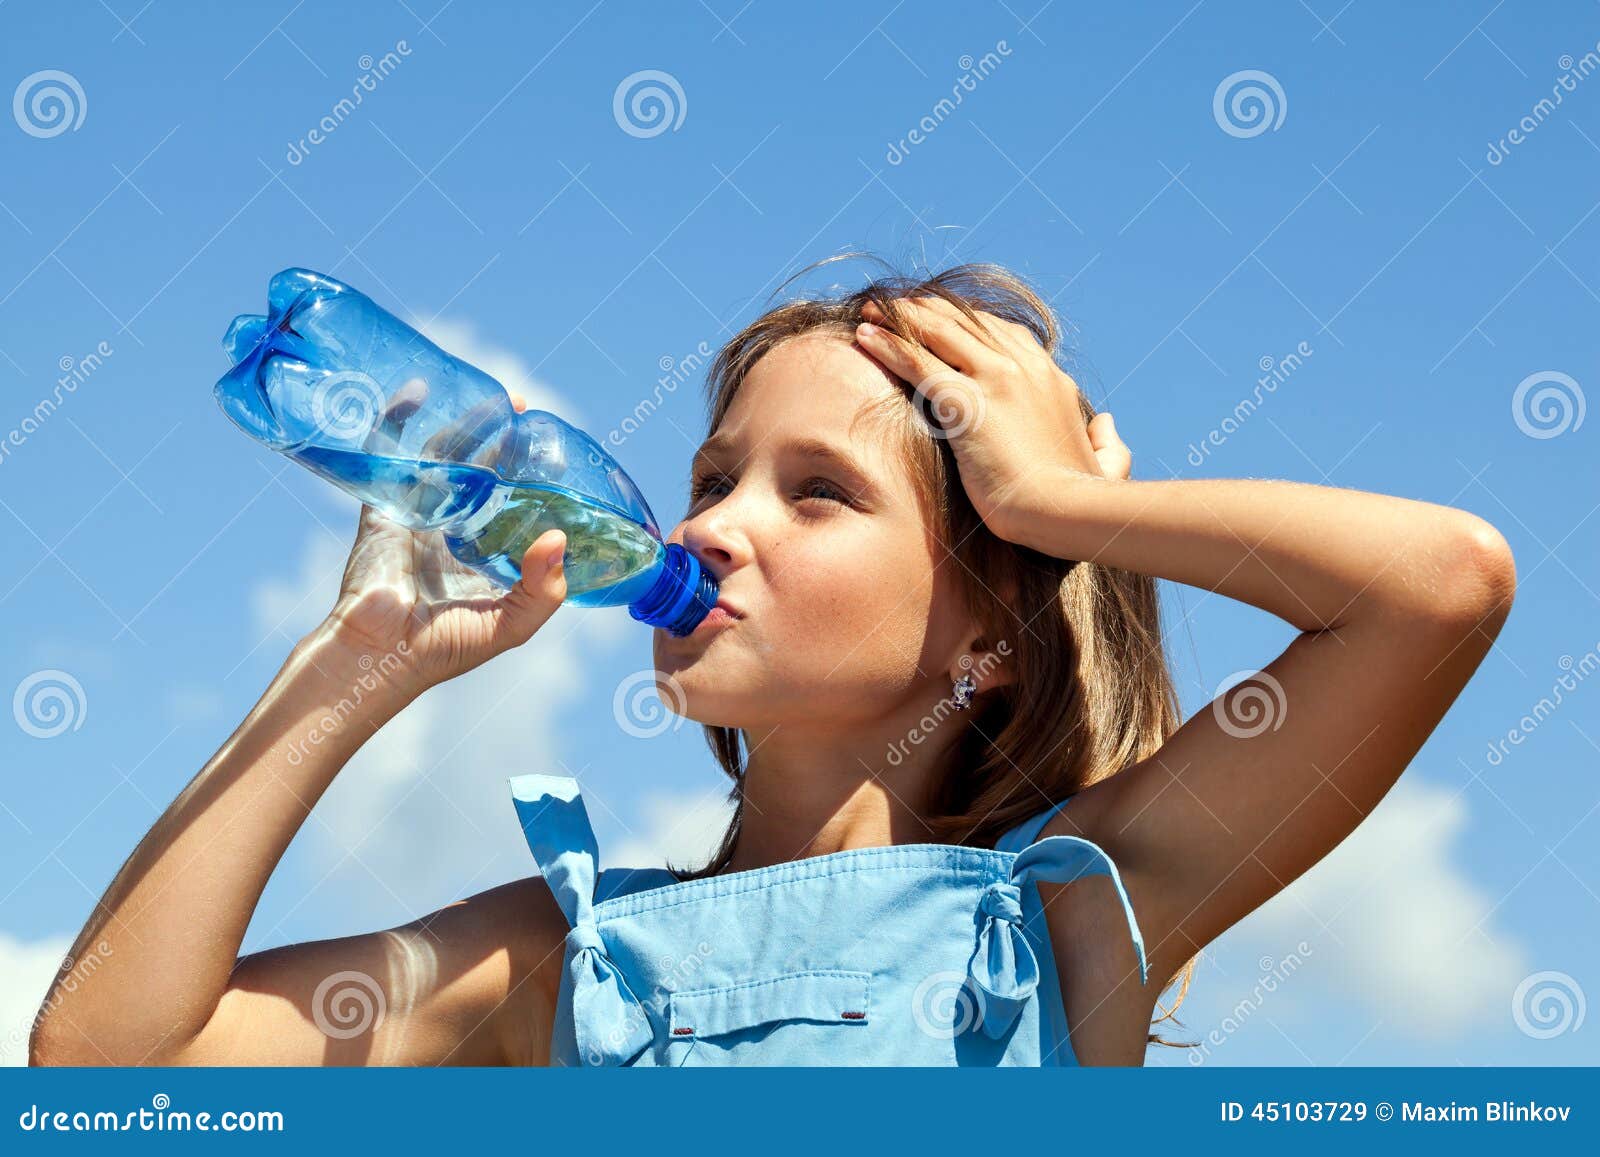 Дети пьют из бутылки. Пьет воду из бутылки. Девочка пьет воду. Девушка пьет воду из бутылки. Девушка с бутылкой воды.